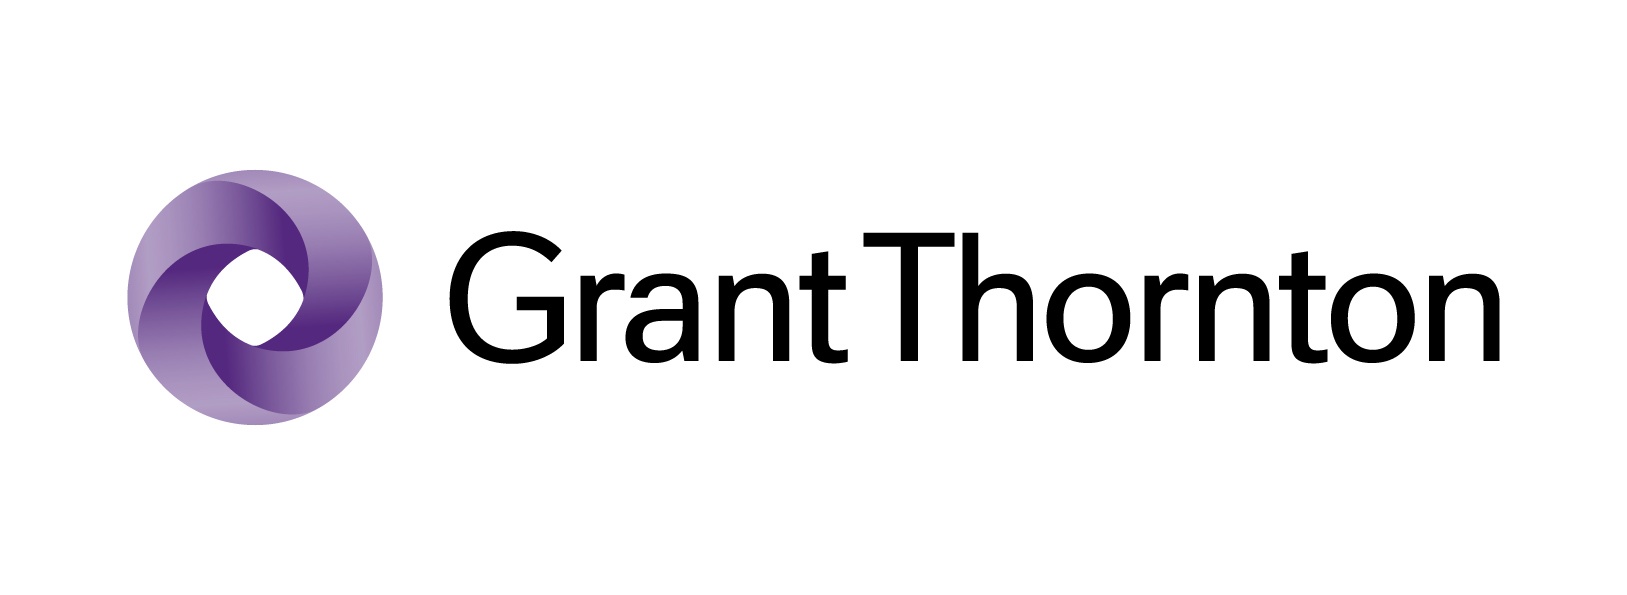 Grant Thornton - Client de pro-legales.com